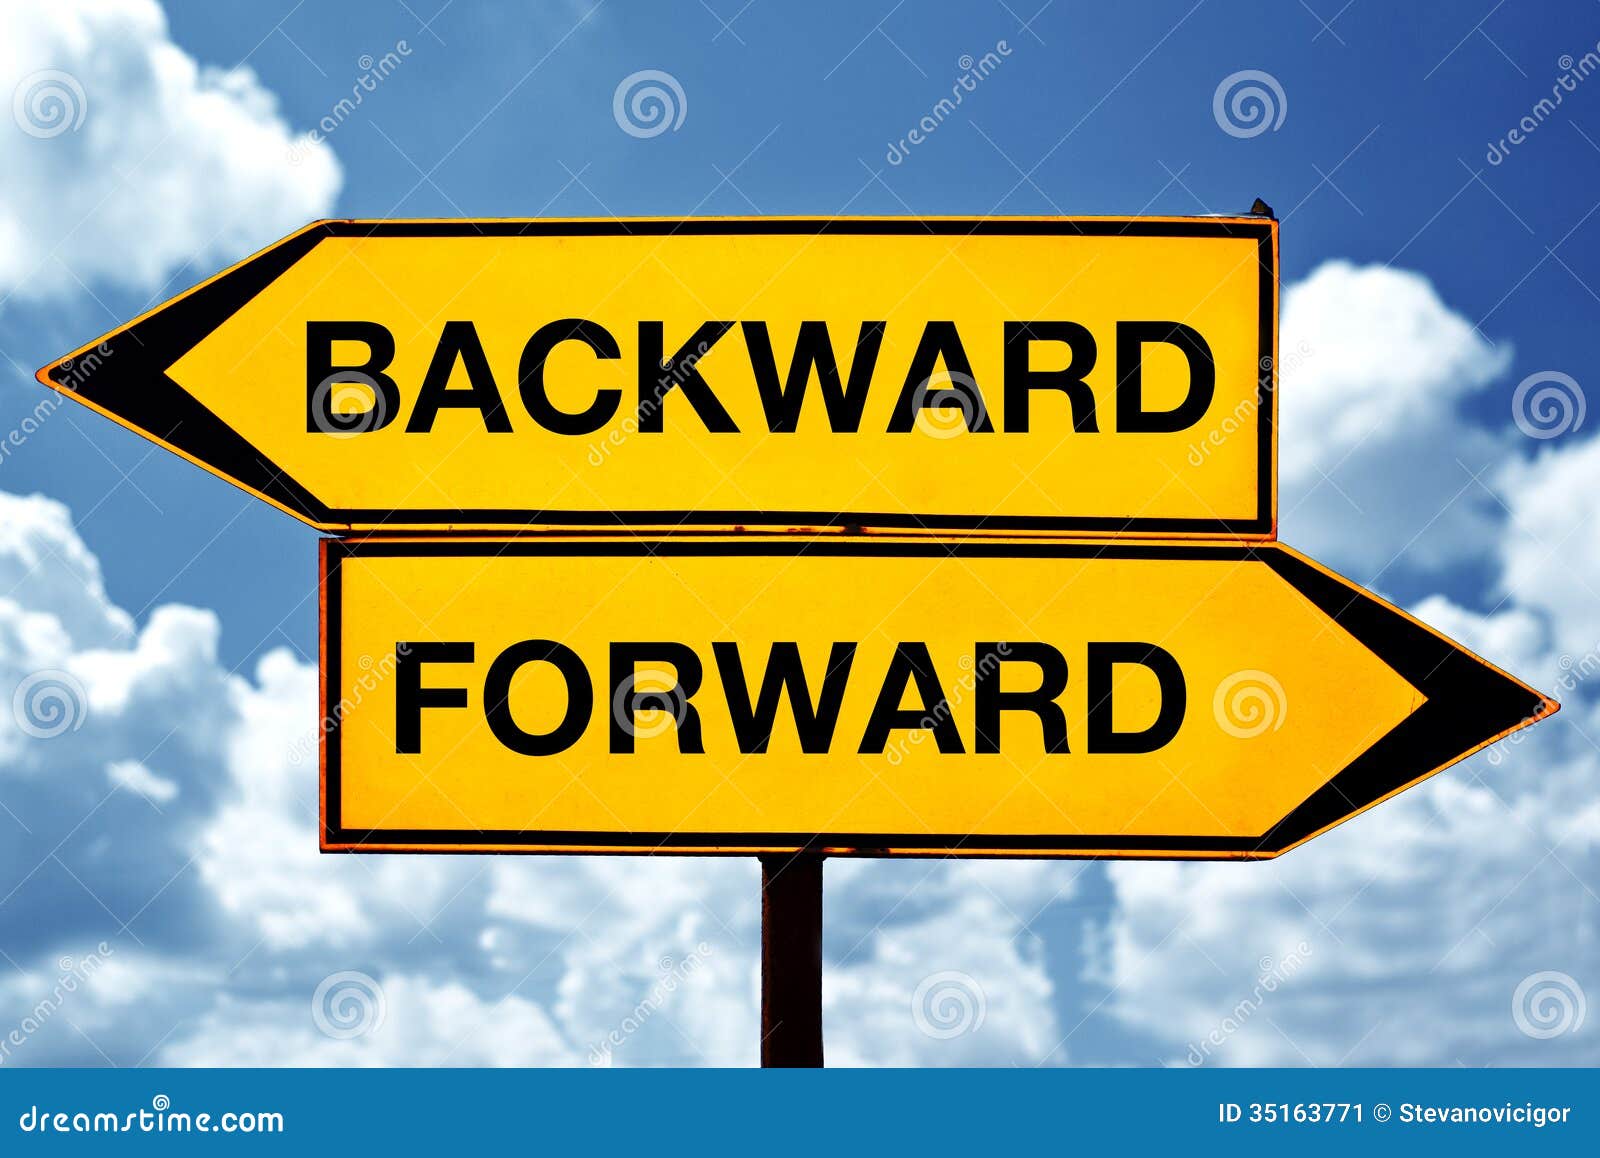 backward or forward